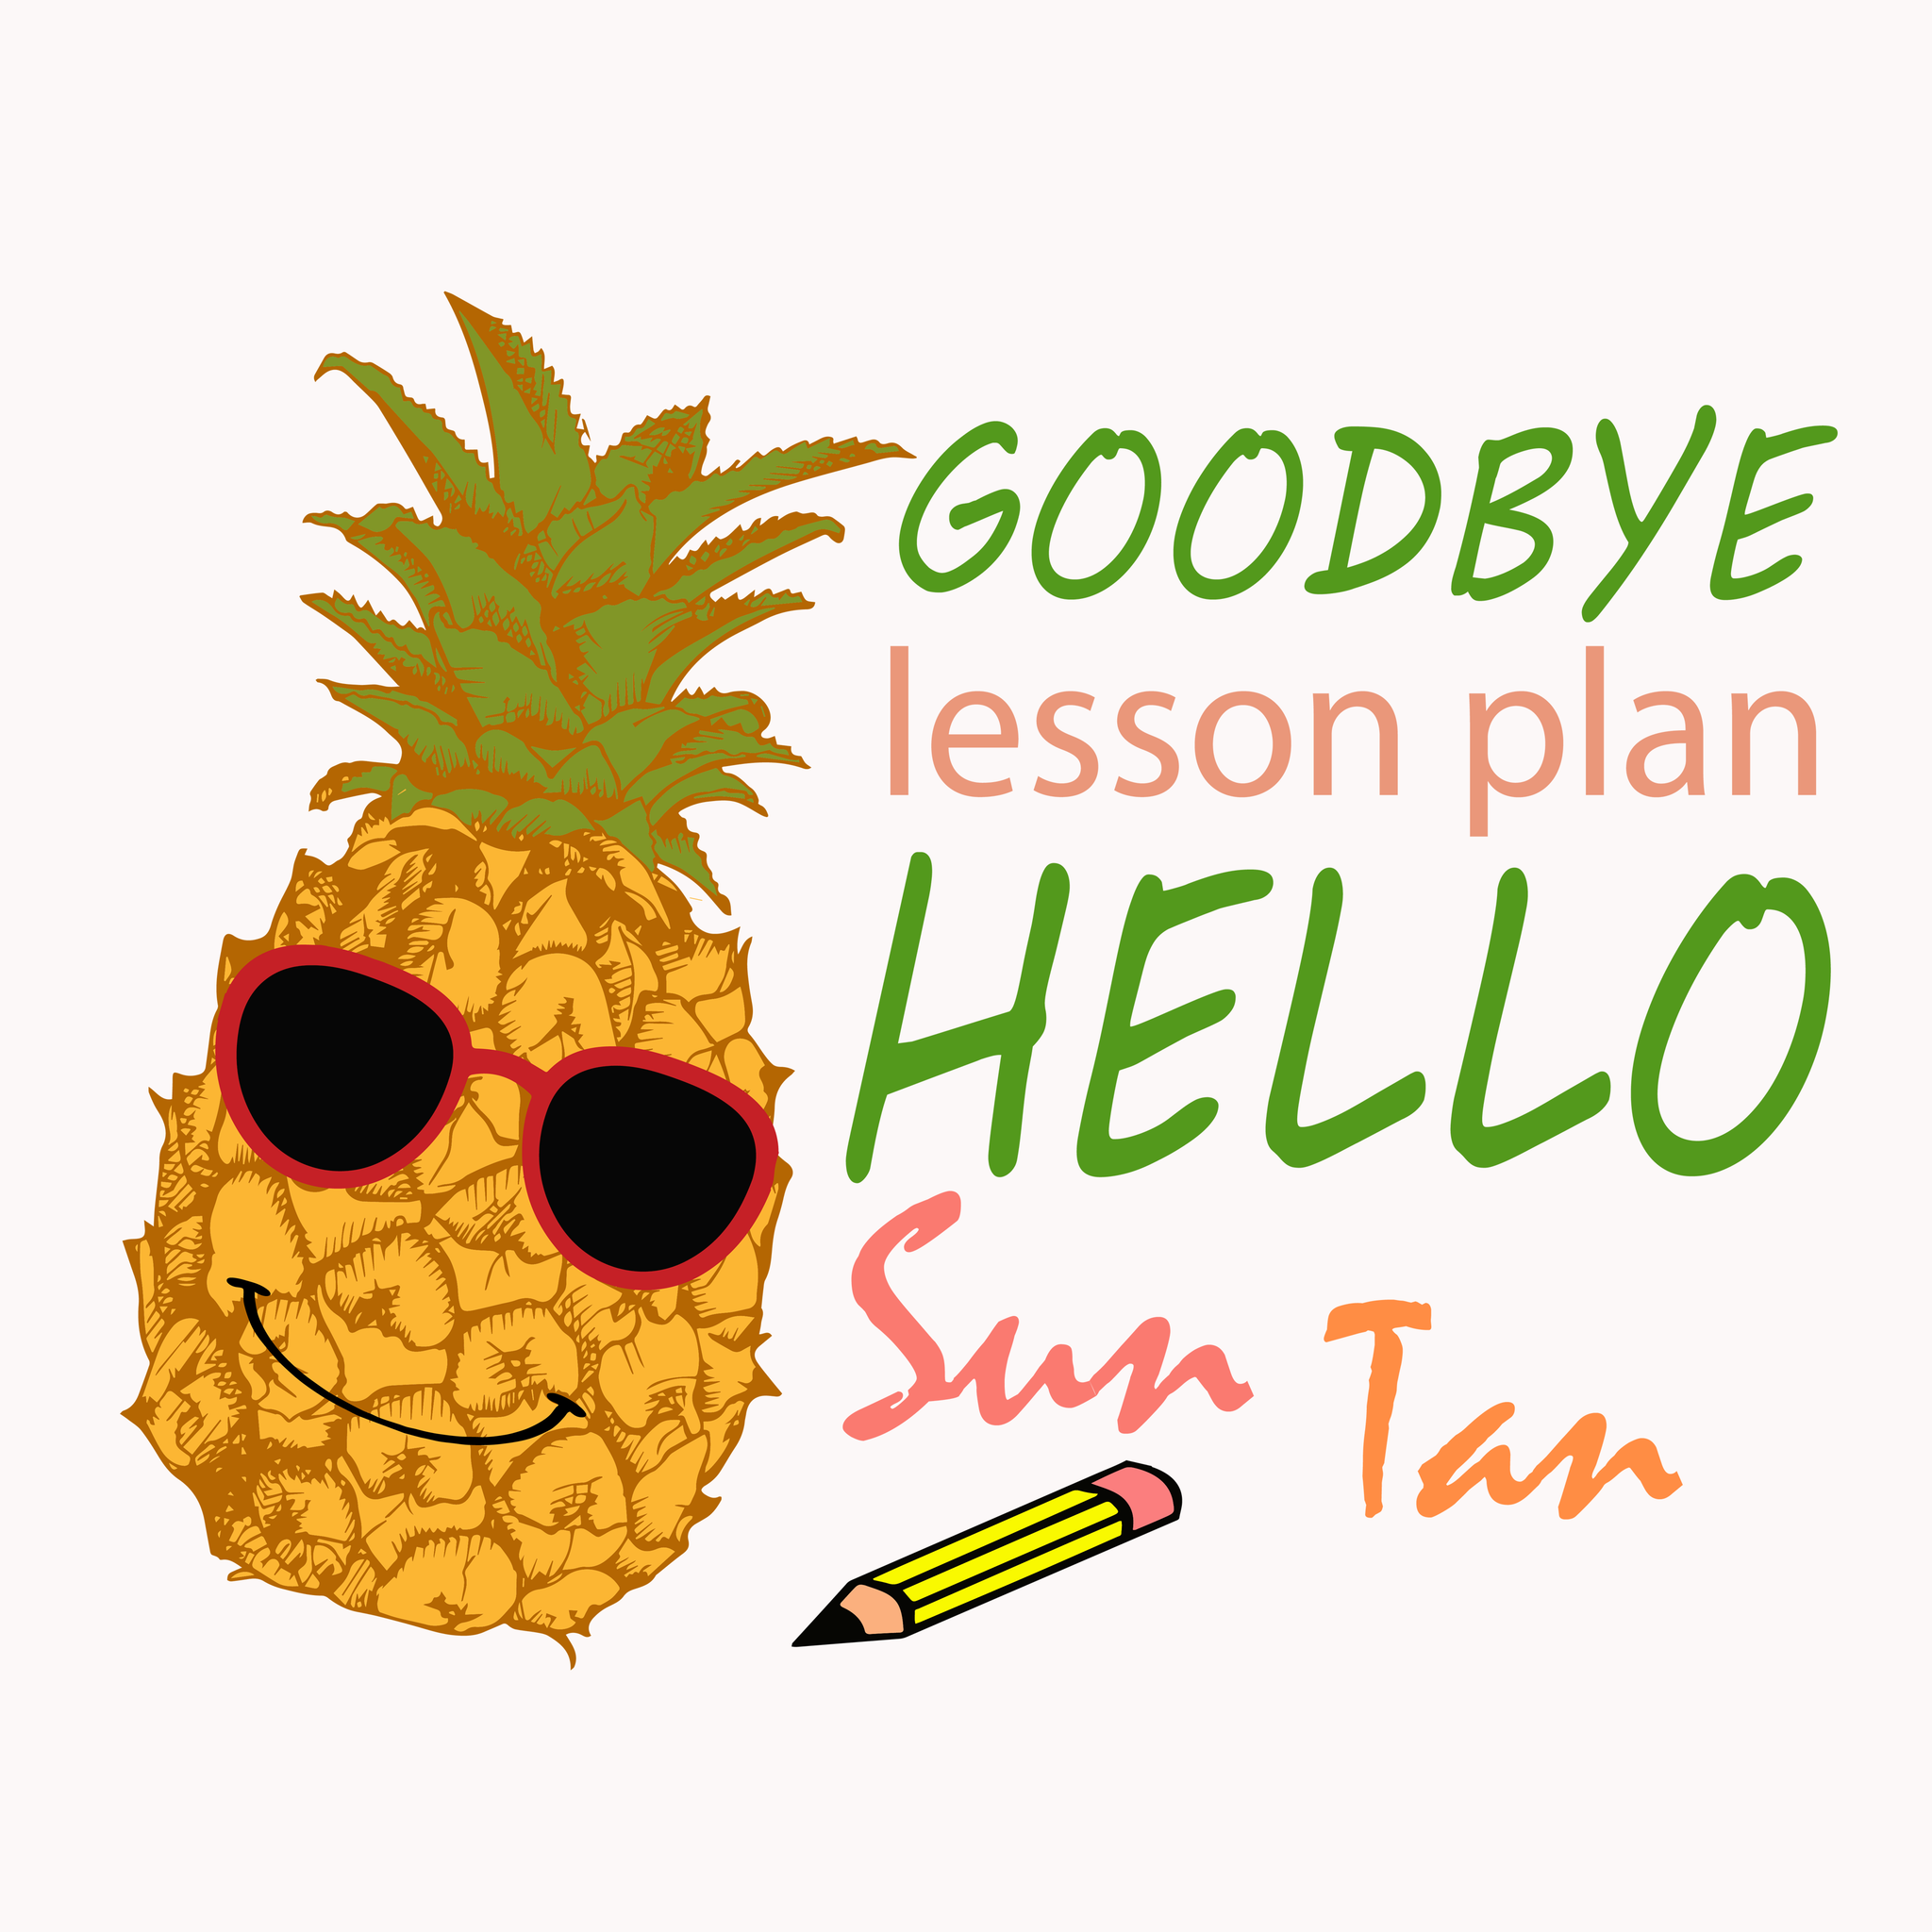 Goodbye lesson plan hello suntan svg, Goodbye lesson plan hello suntan, funny quotes svg, quotes svg, png, eps, dxf file